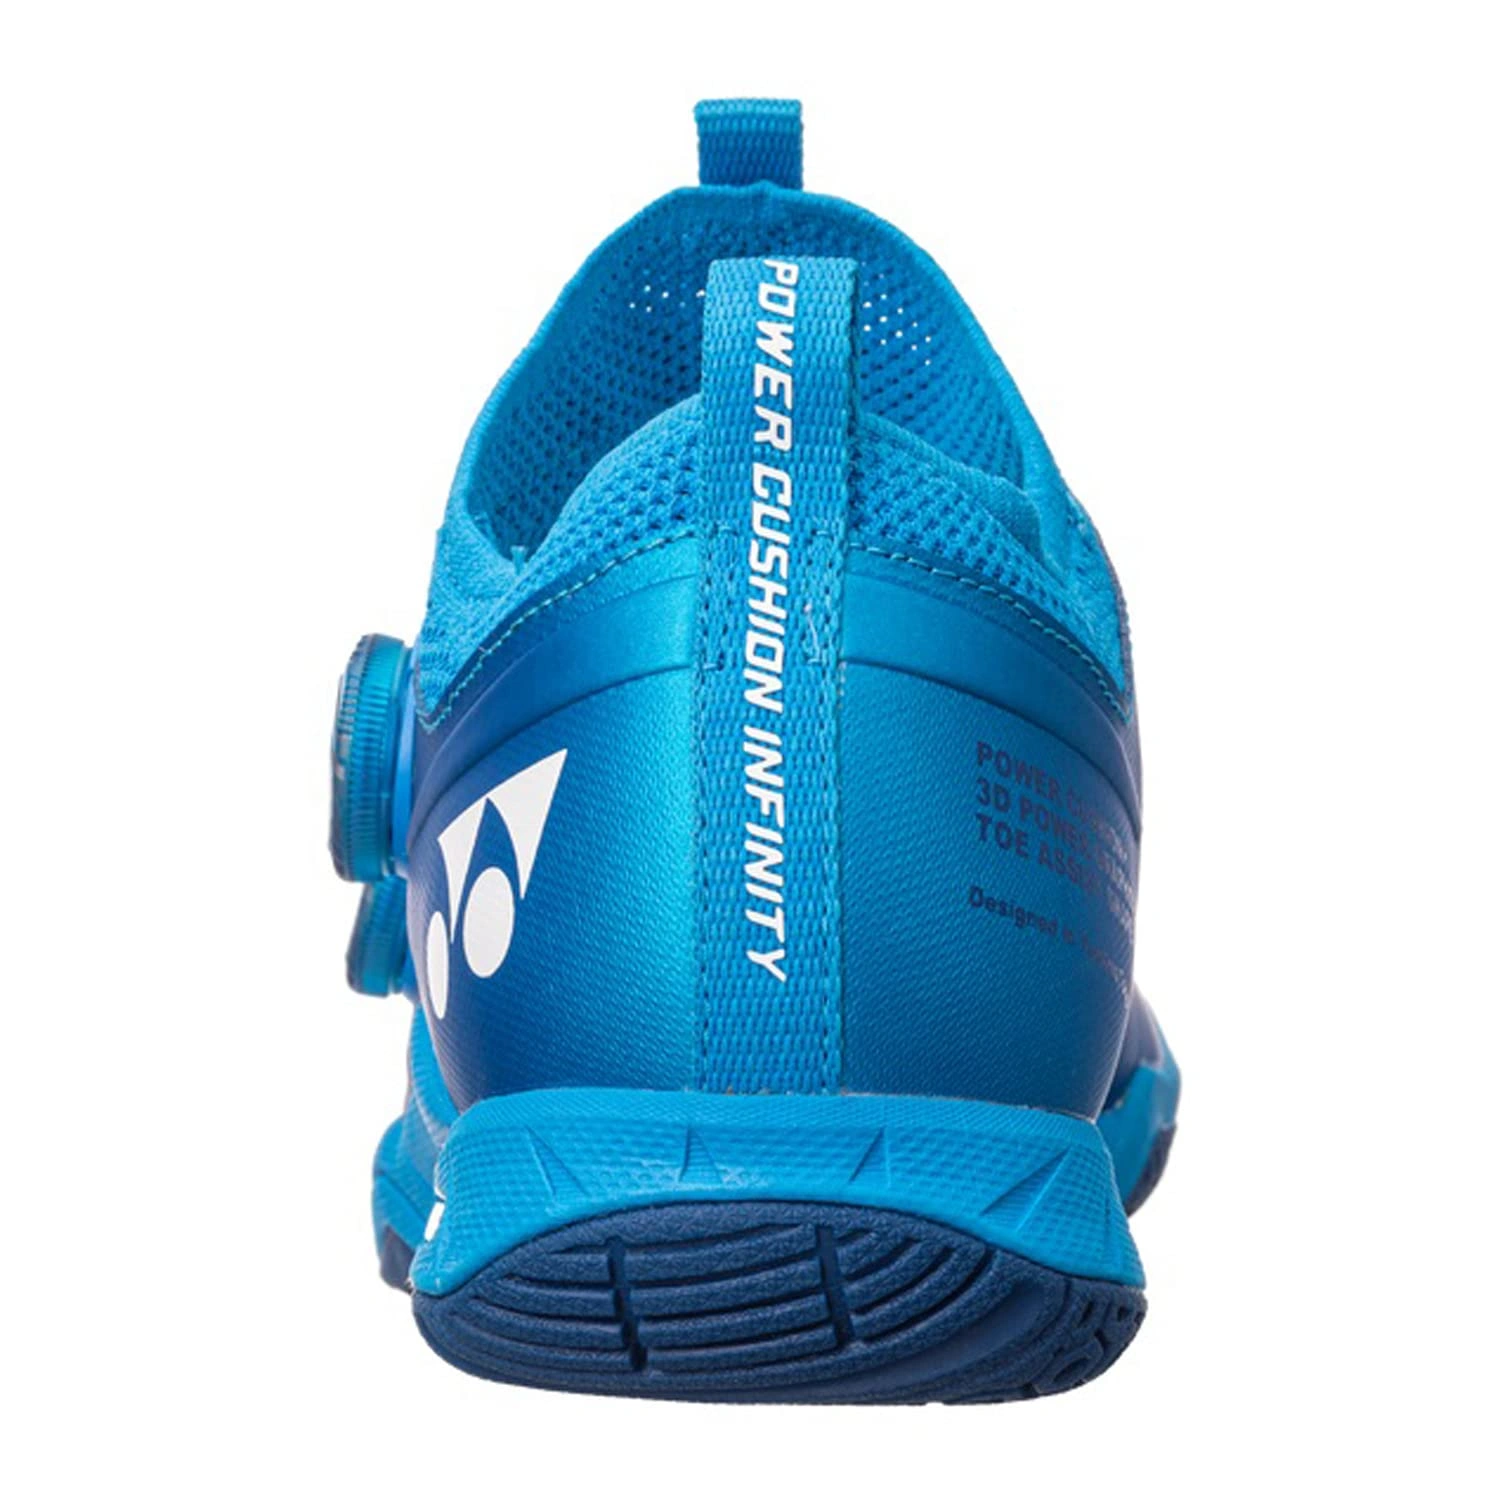 YONEX SHB Infinity 2 EX Power Cushion Badminton Shoes-METALIC BLUE-8-4